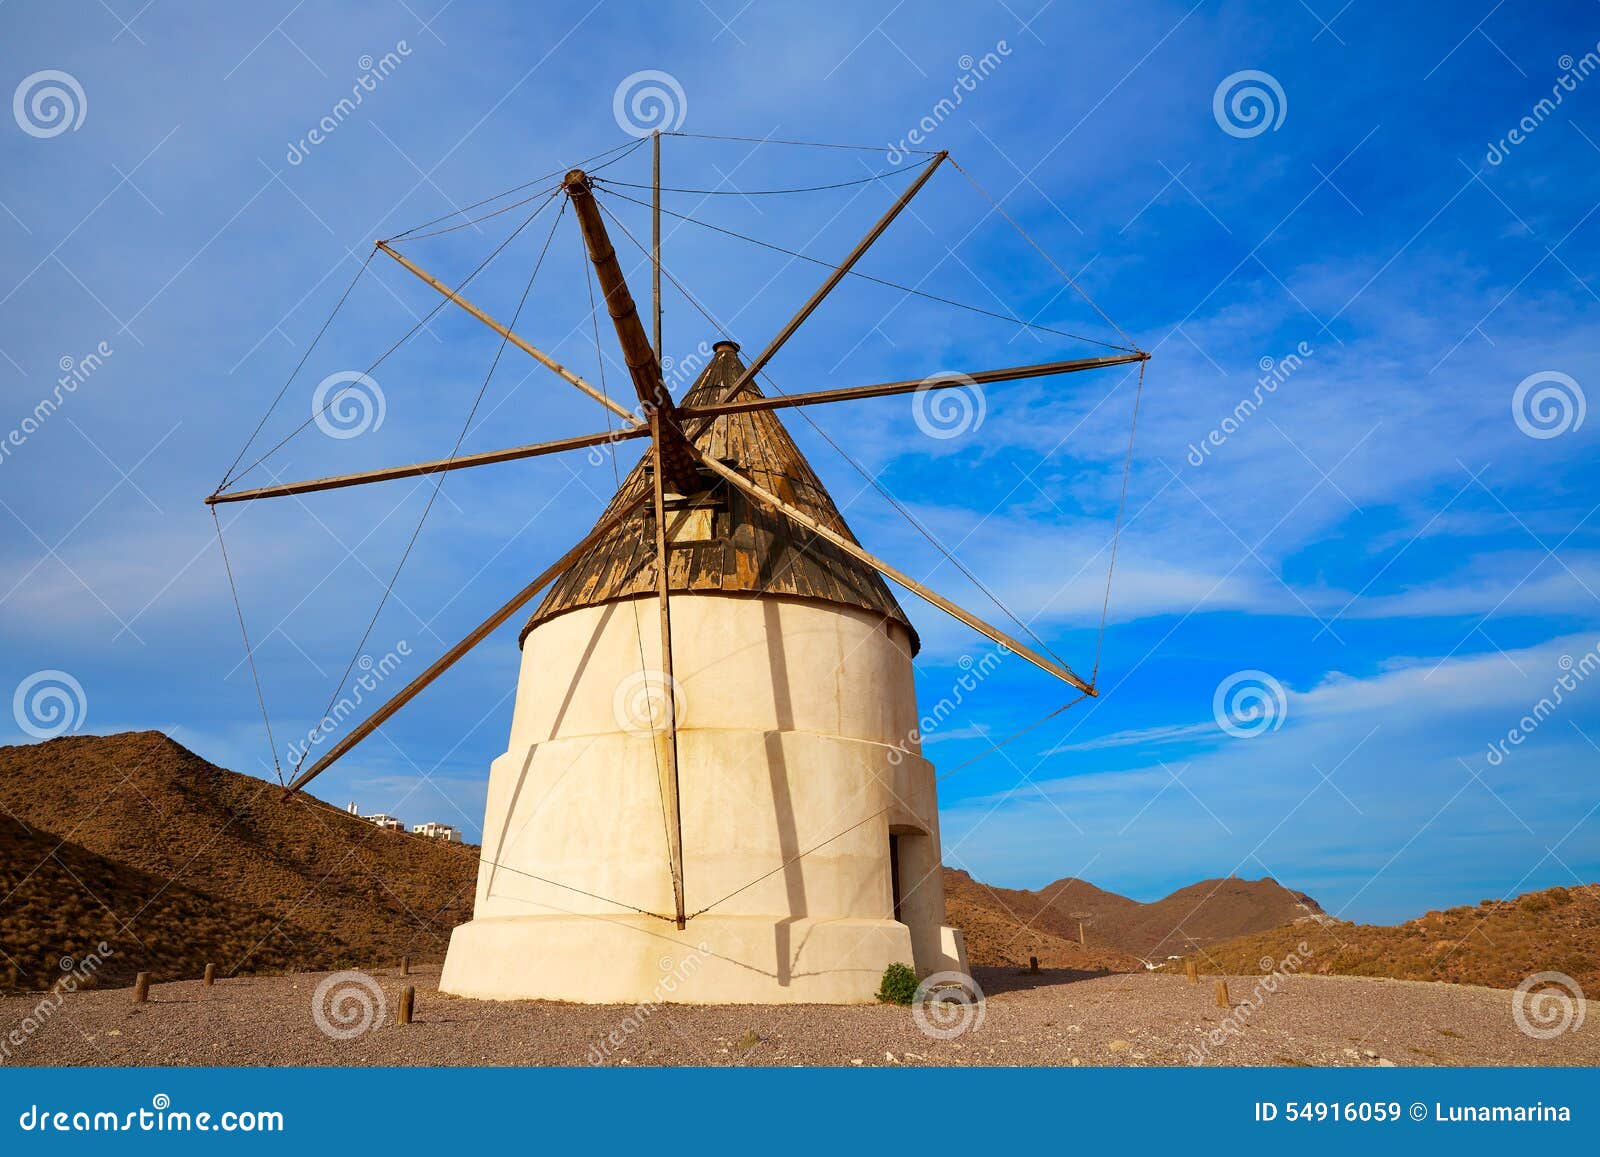 almeria molino de los genoveses windmill spain